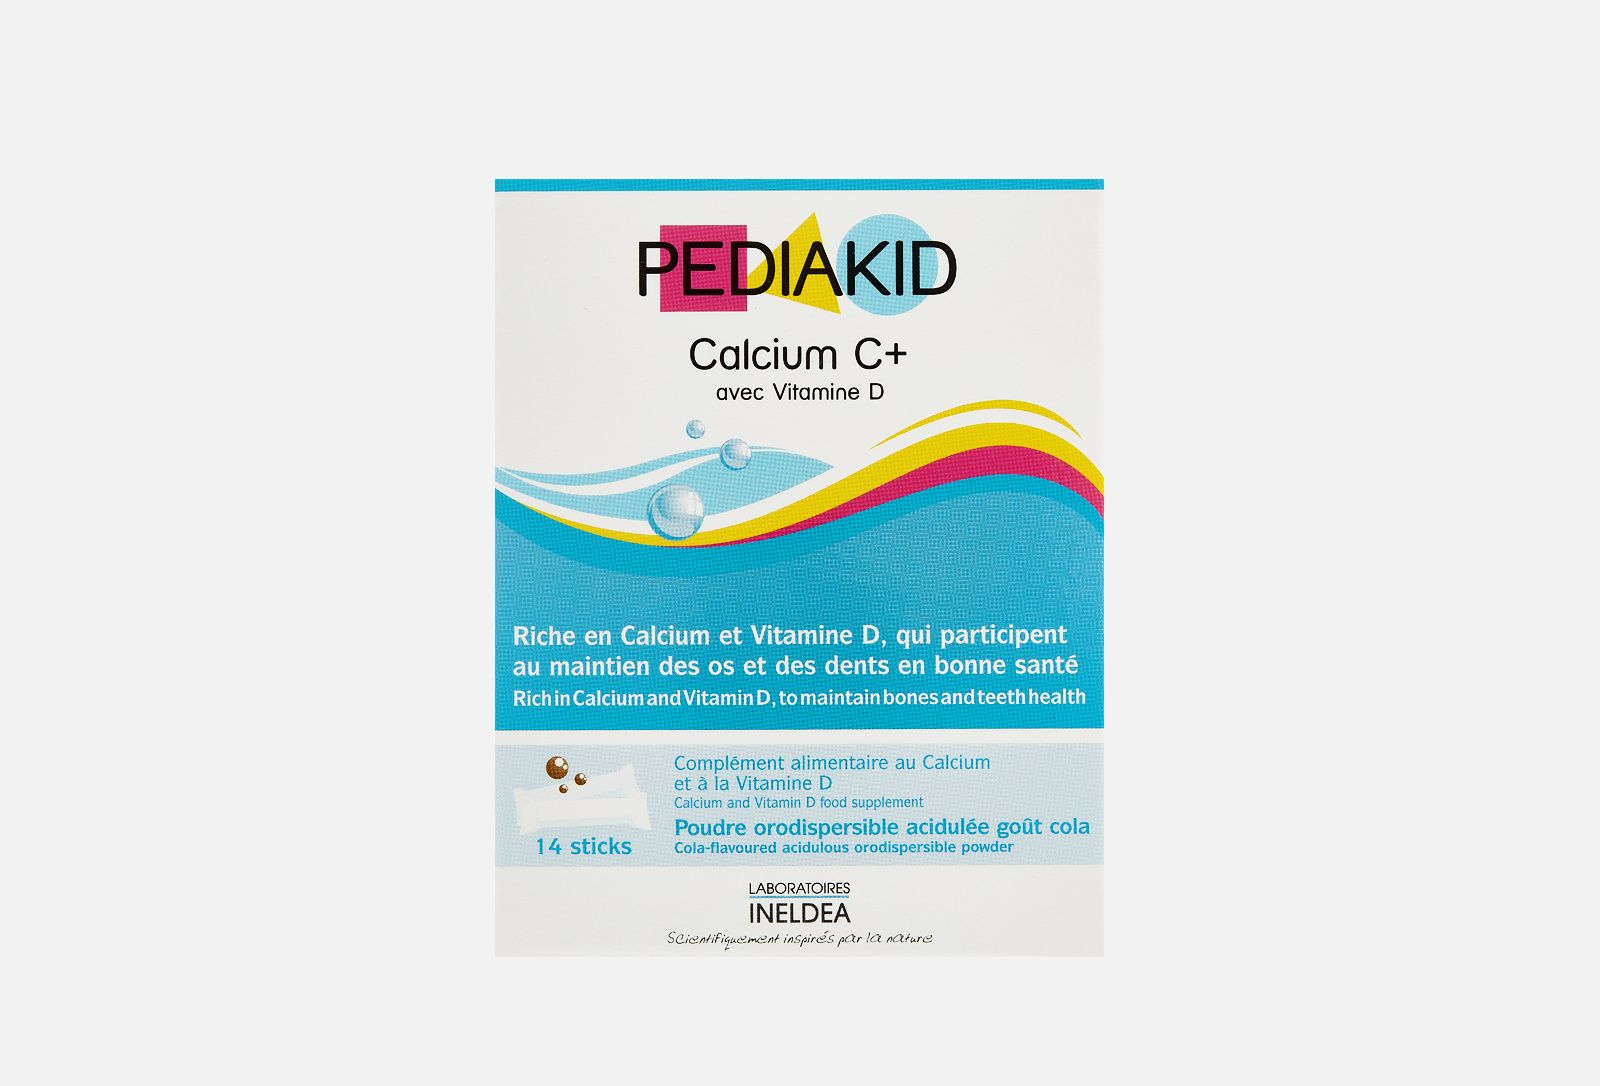 Pediakid Calcium C+ vit D en stick - Poudre orodispersible goût Cola